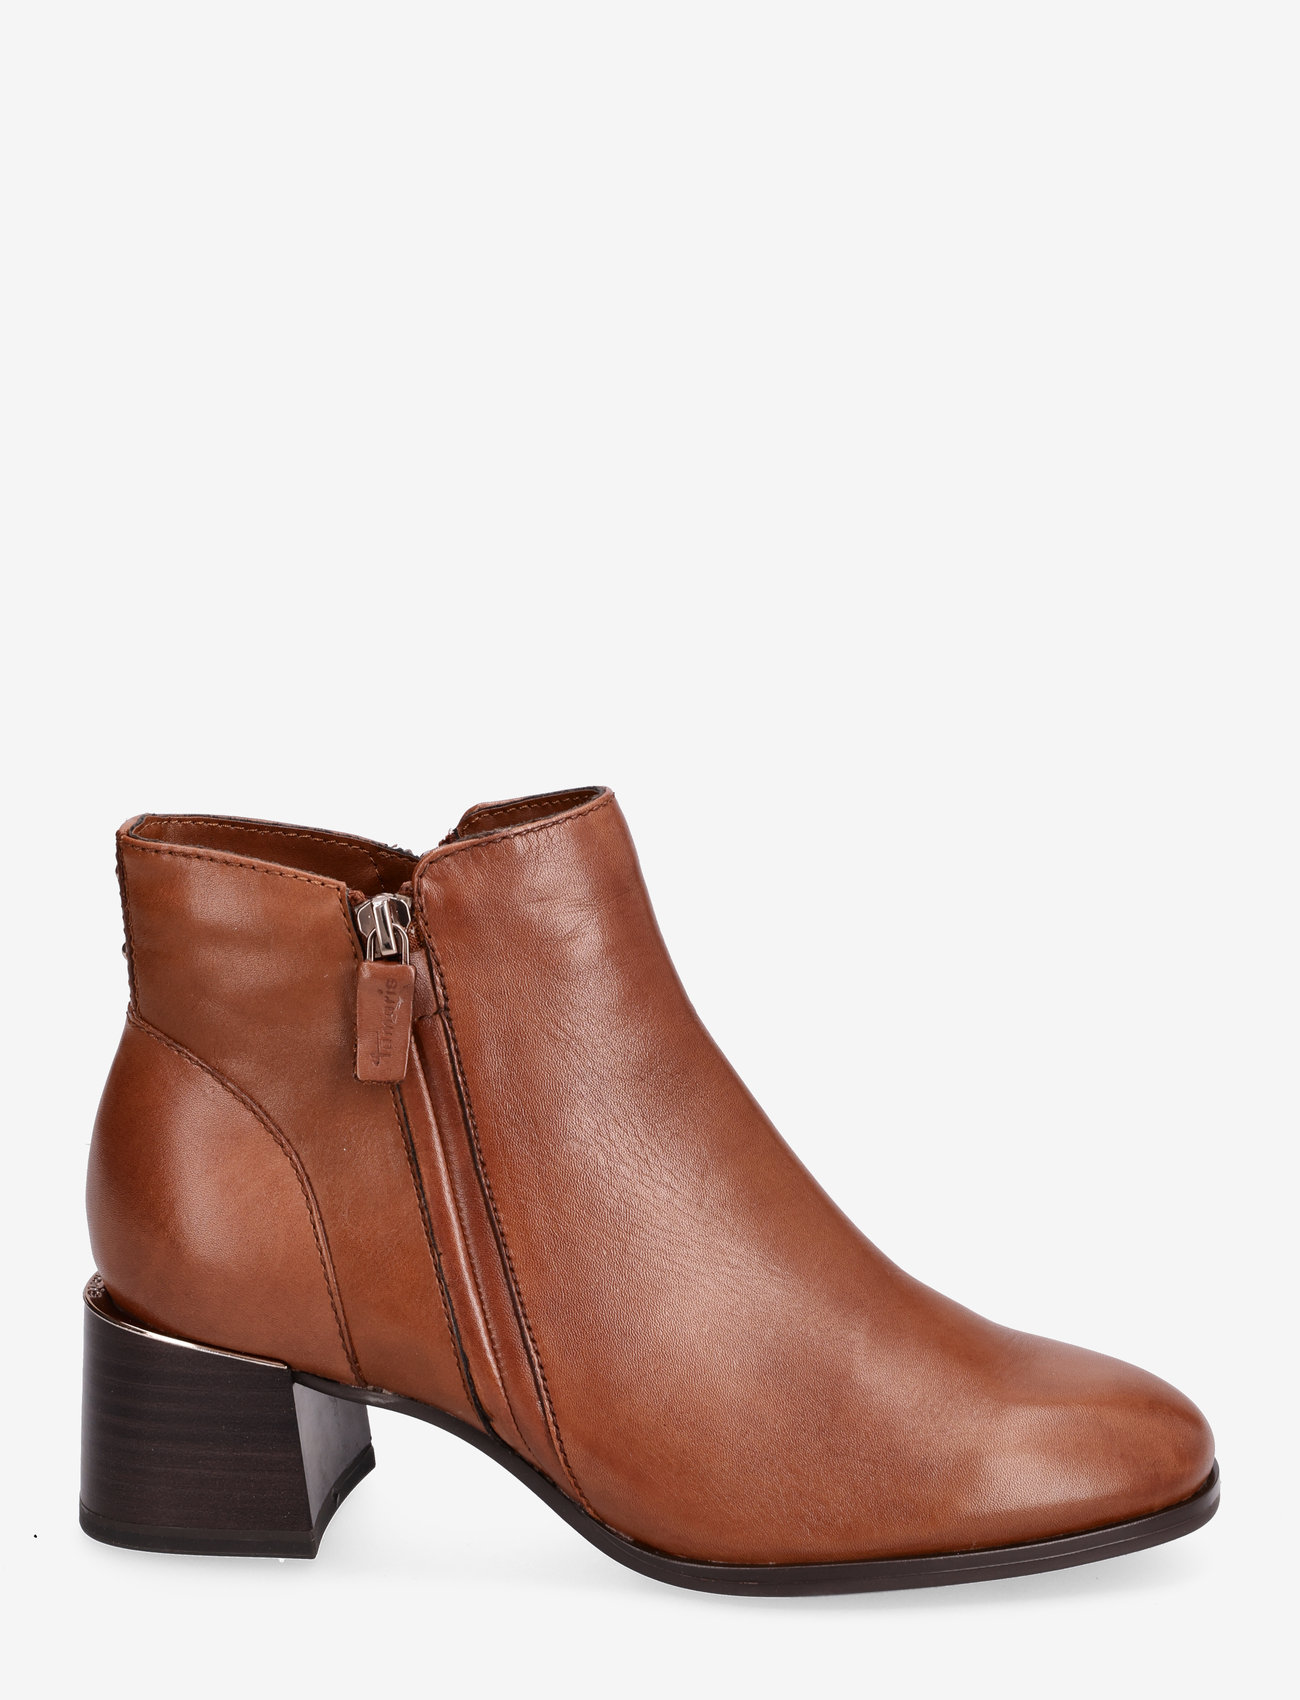 Tamaris - Women Boots - high heel - cognac - 1